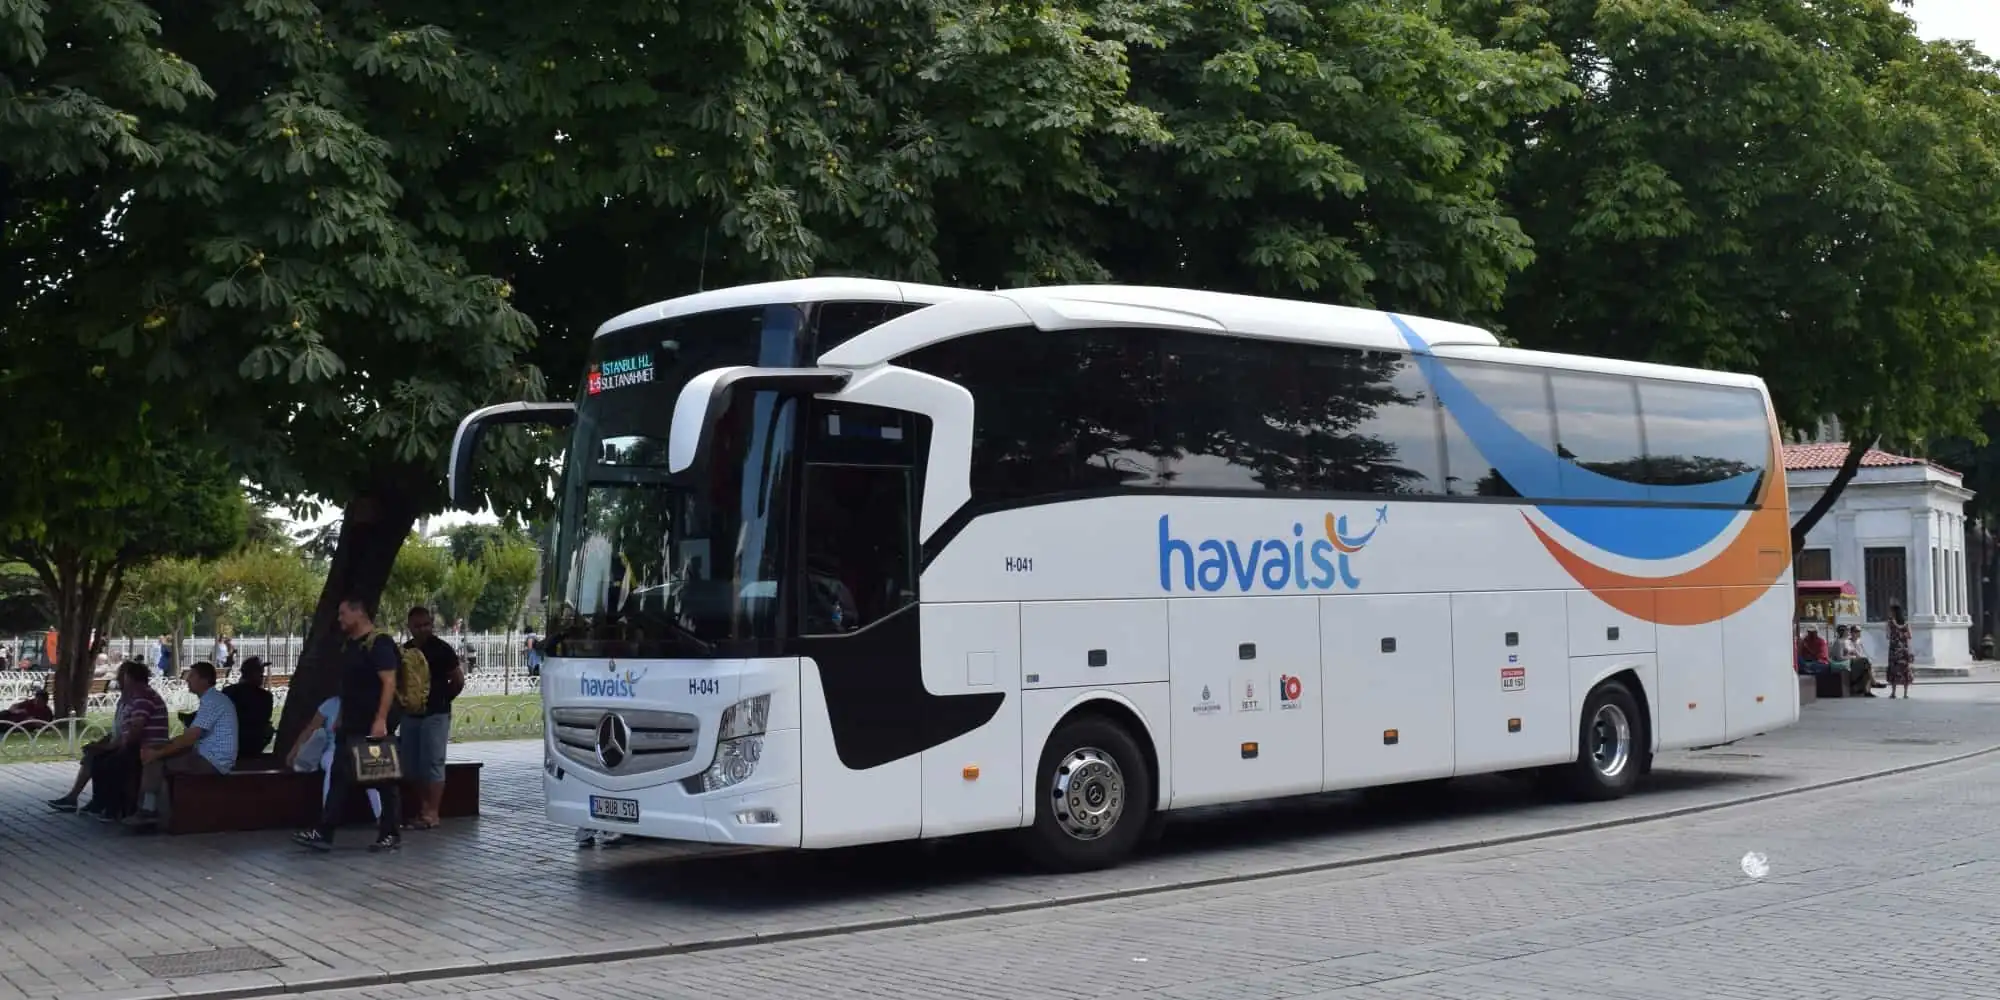 اتوبوس های فرودگاه استانبول HAVAIST